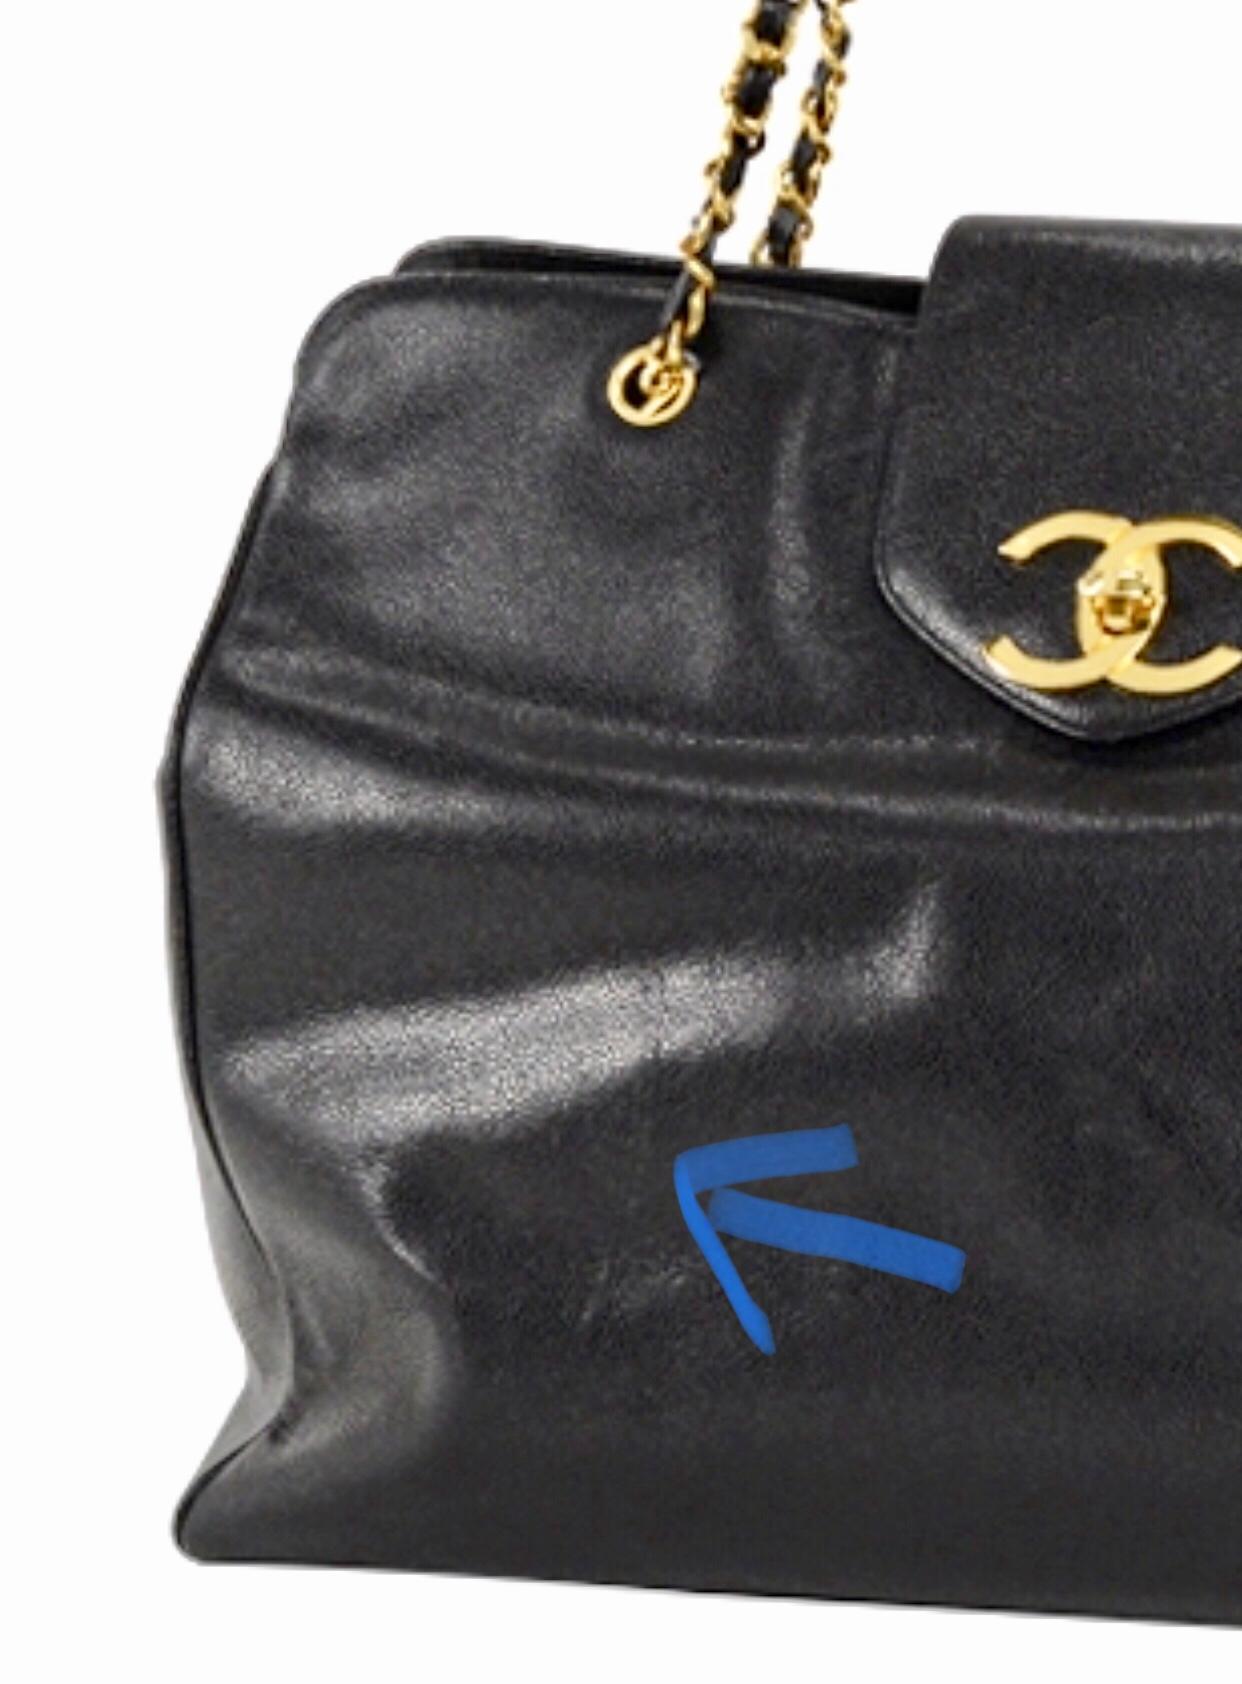 Vintage CHANEL black caviar leather Overnighter, Weekender bag, large chain bag. 7